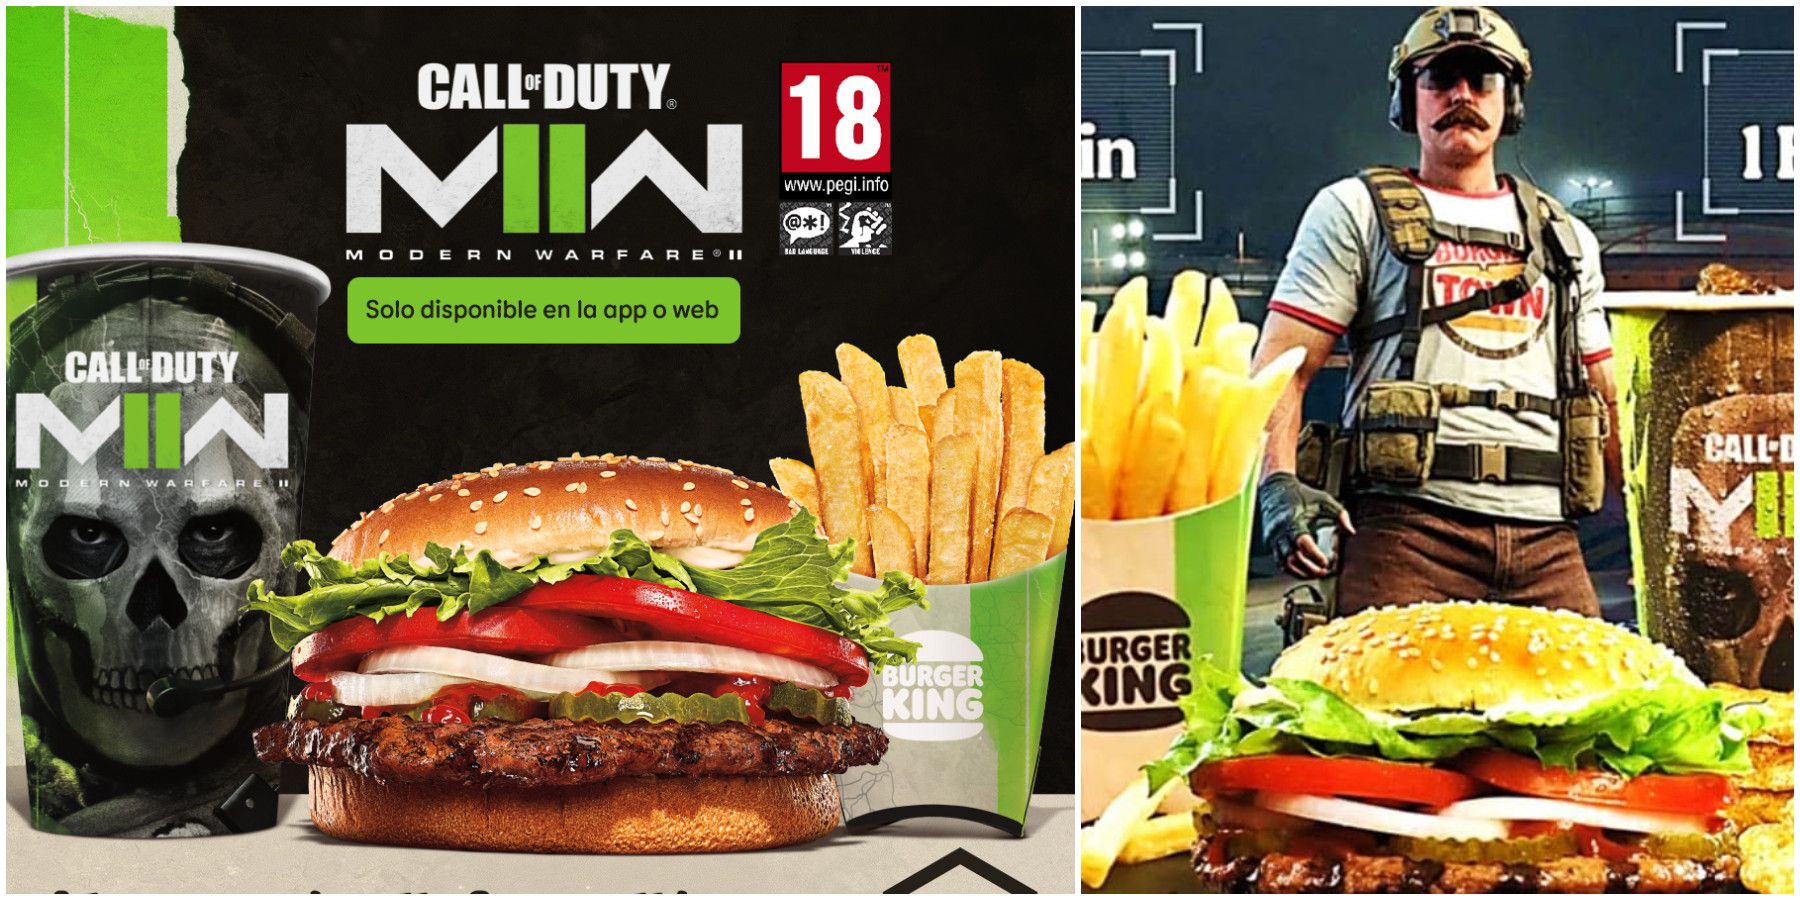 Call of Duty Modern Warfare 2 Burger King